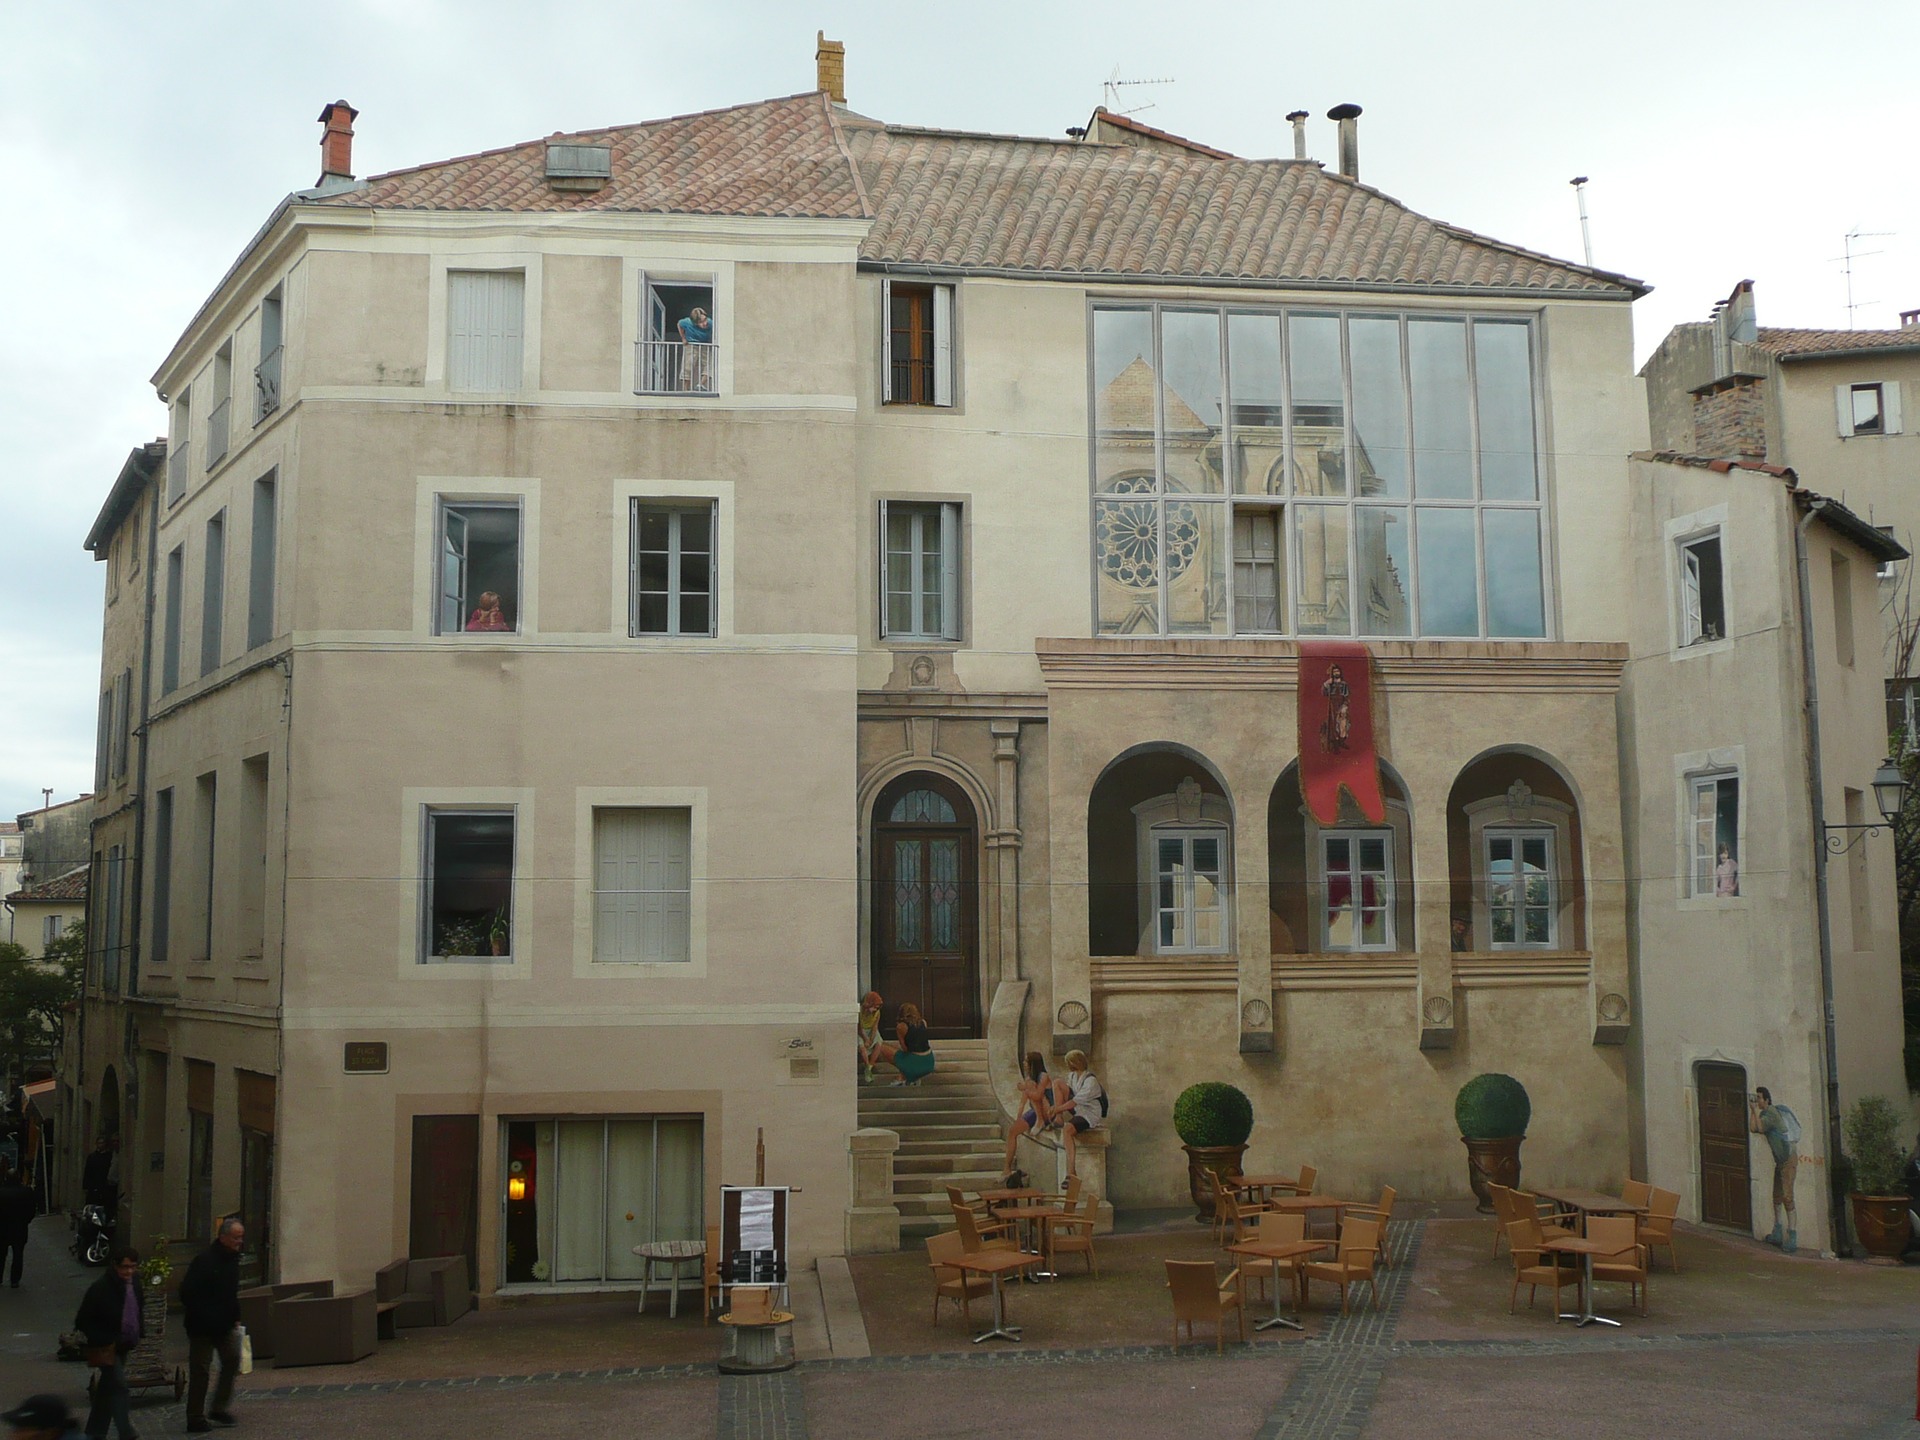 Bâtiment à Montpellier Saint-Roch composé de trompe l'oeil très réaliste faisant la continuité du bâtiment en lui ajoutant des fenêtres et portes